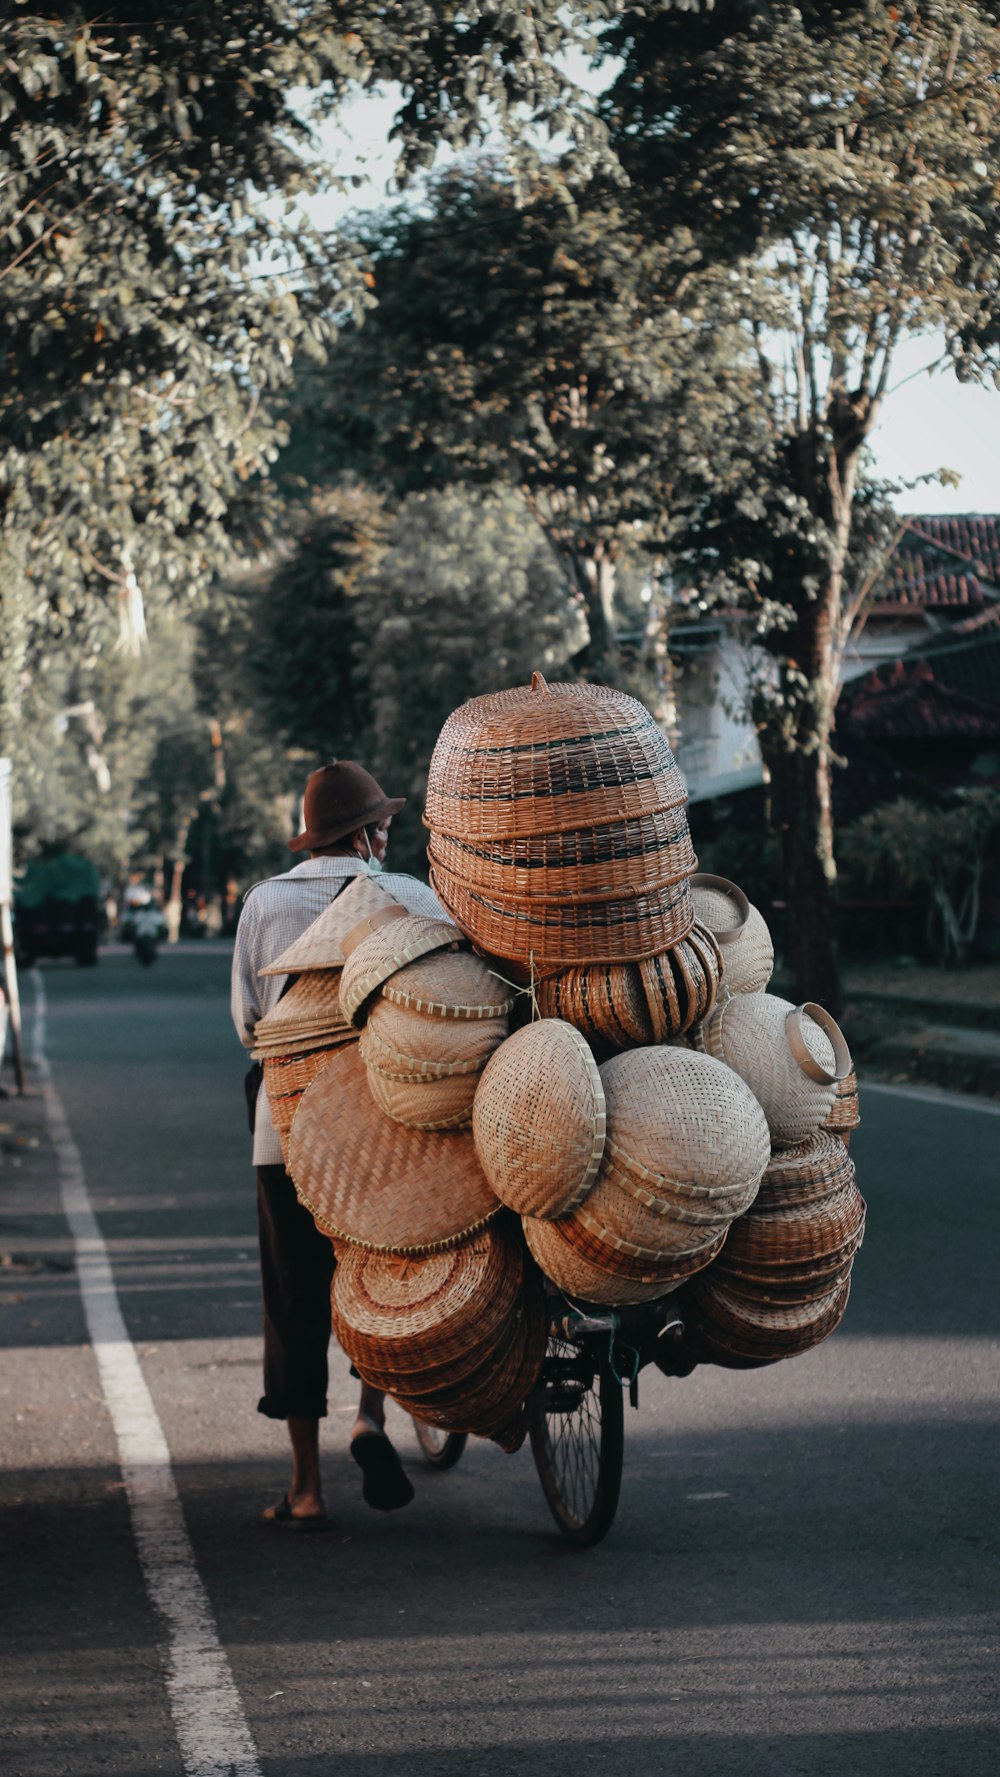 decoraciones redondas de madera marrón en la carretera durante el día